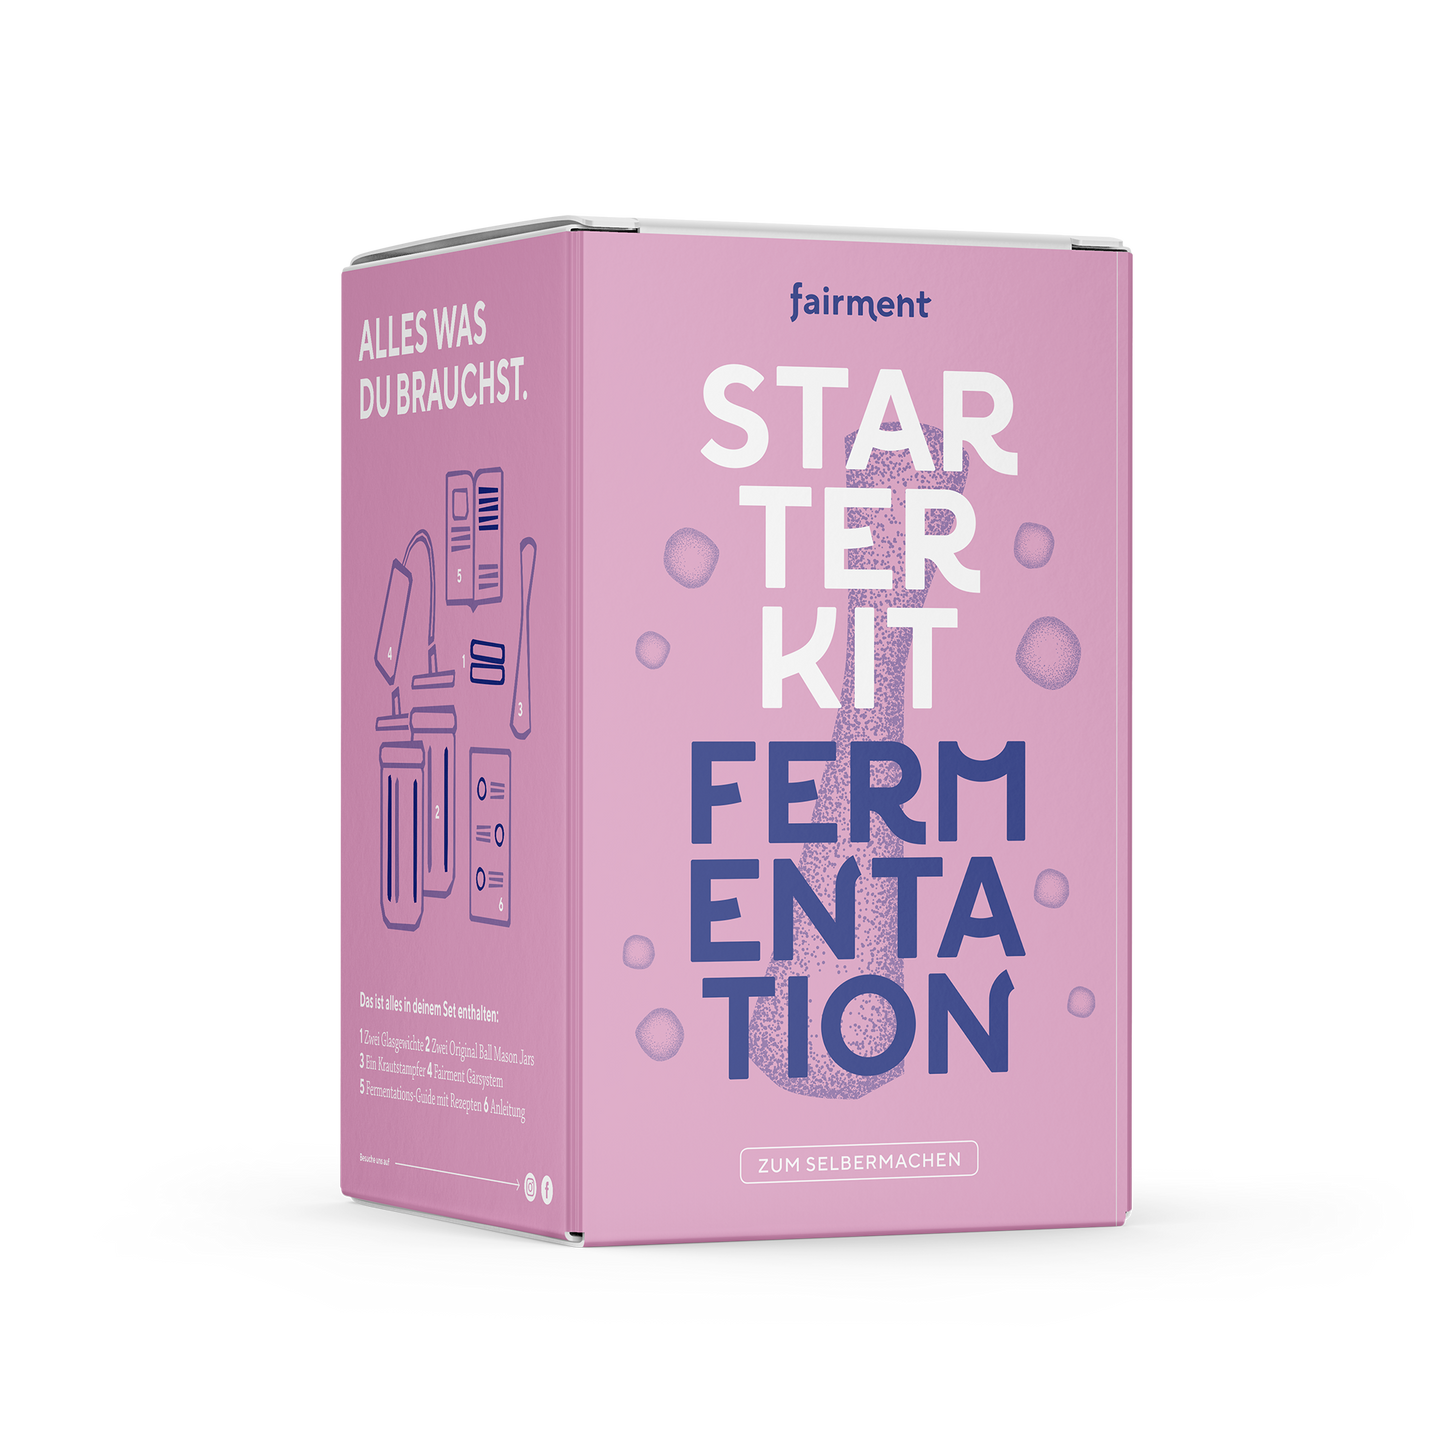 Fairment_Starterset_Fermentation